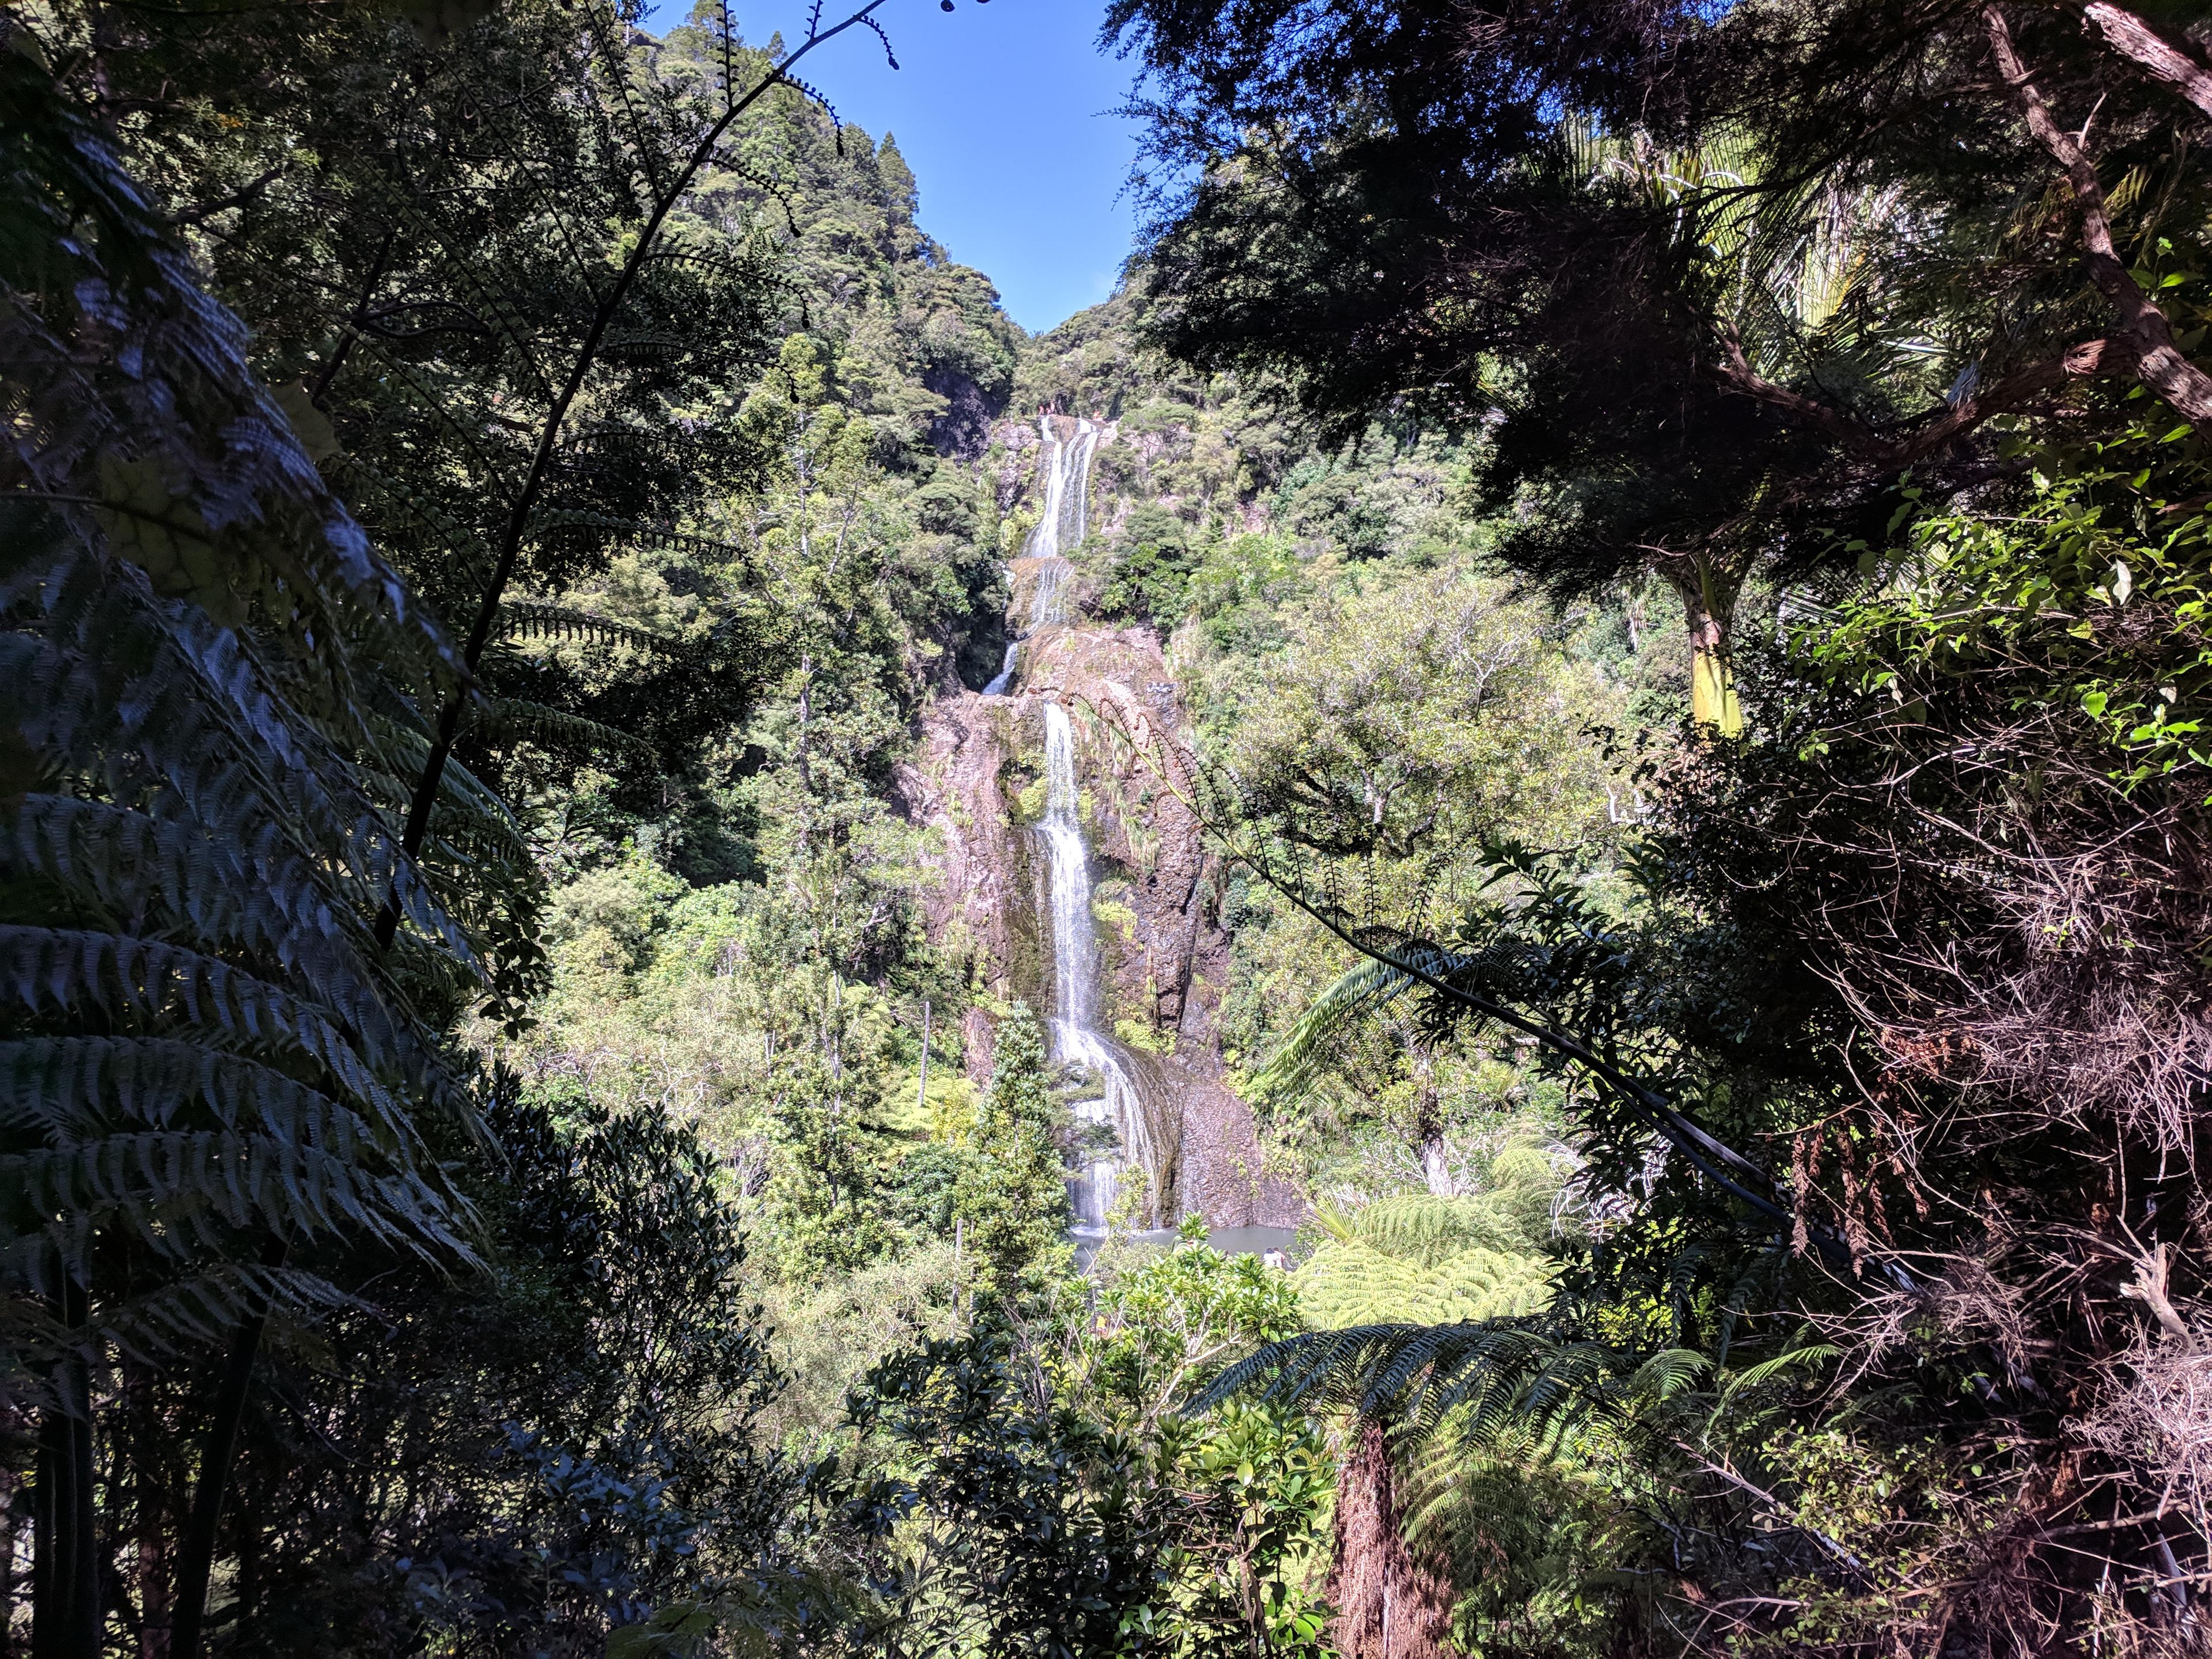 Kitekite falls